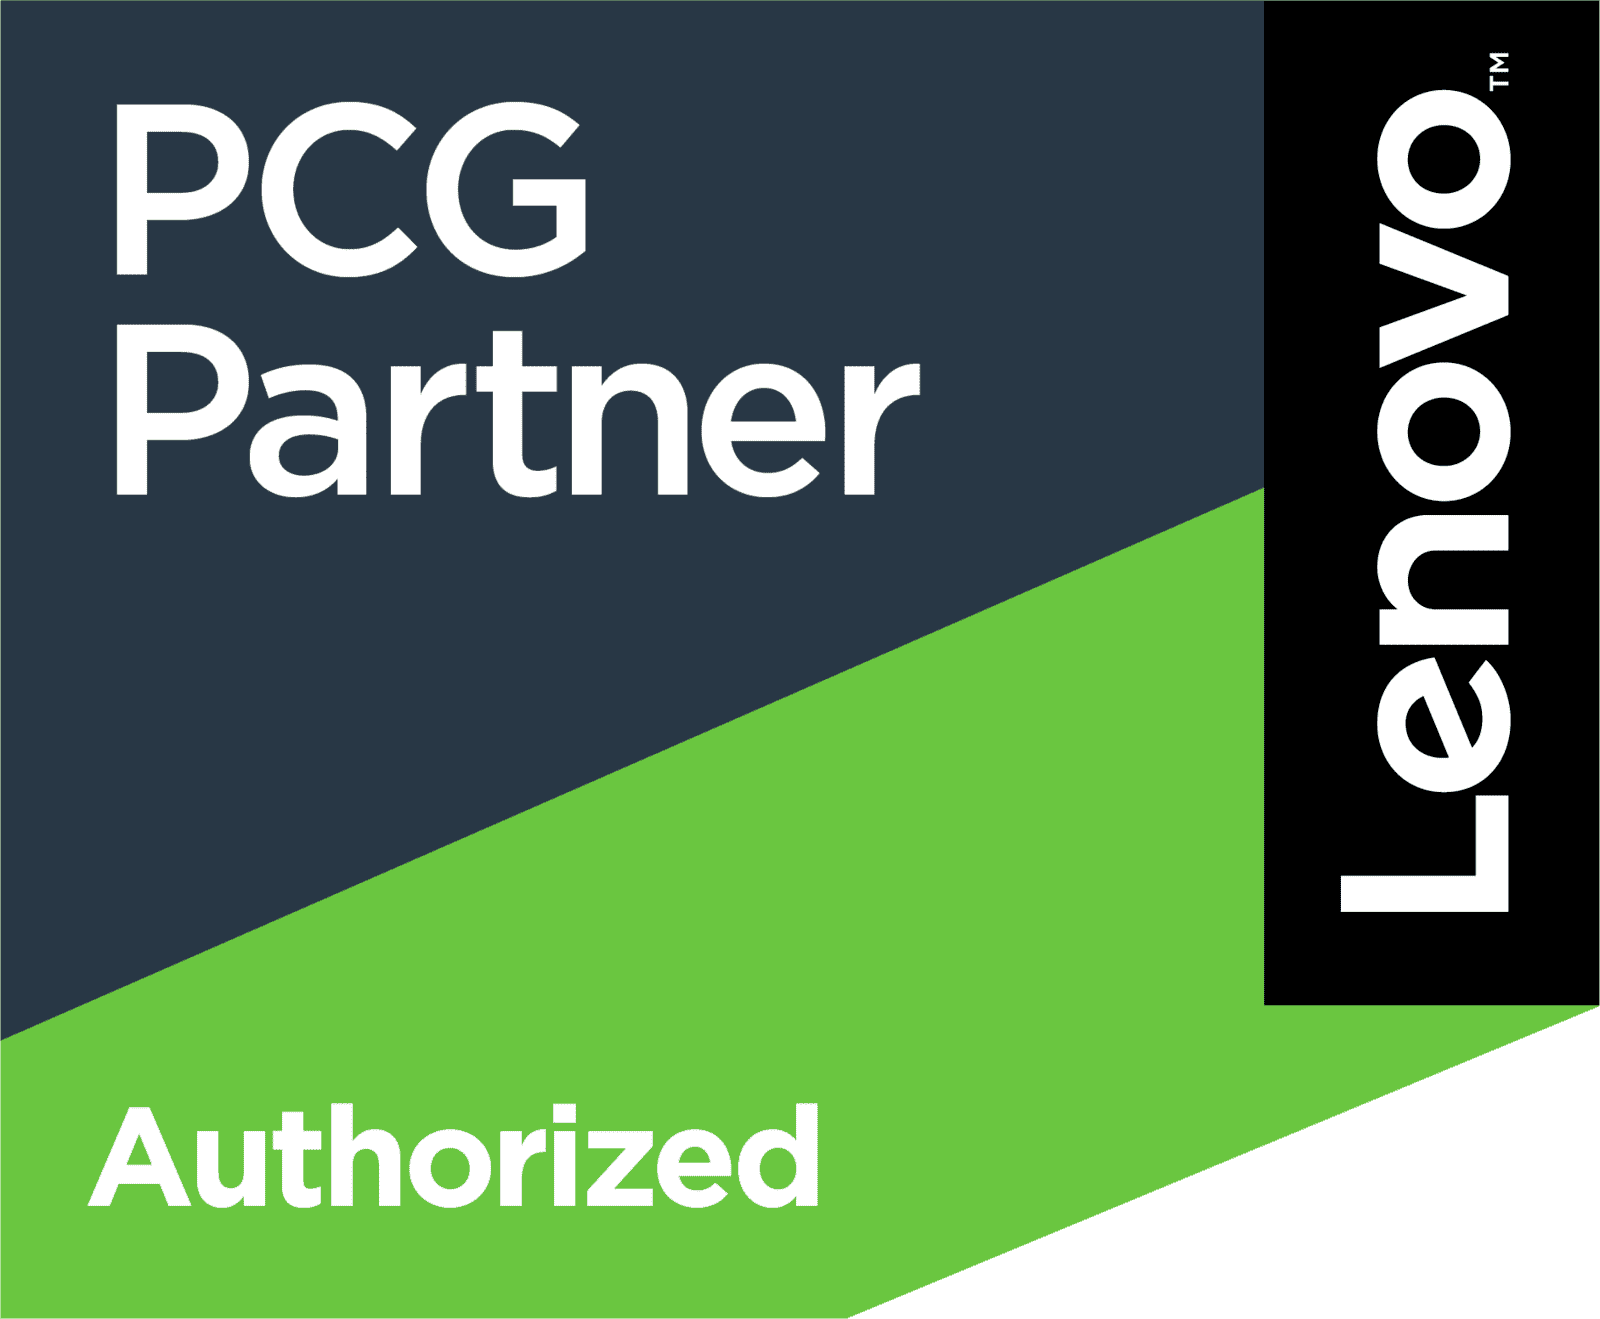 lenovo authorized partner logo in green, black, white, and navy blue